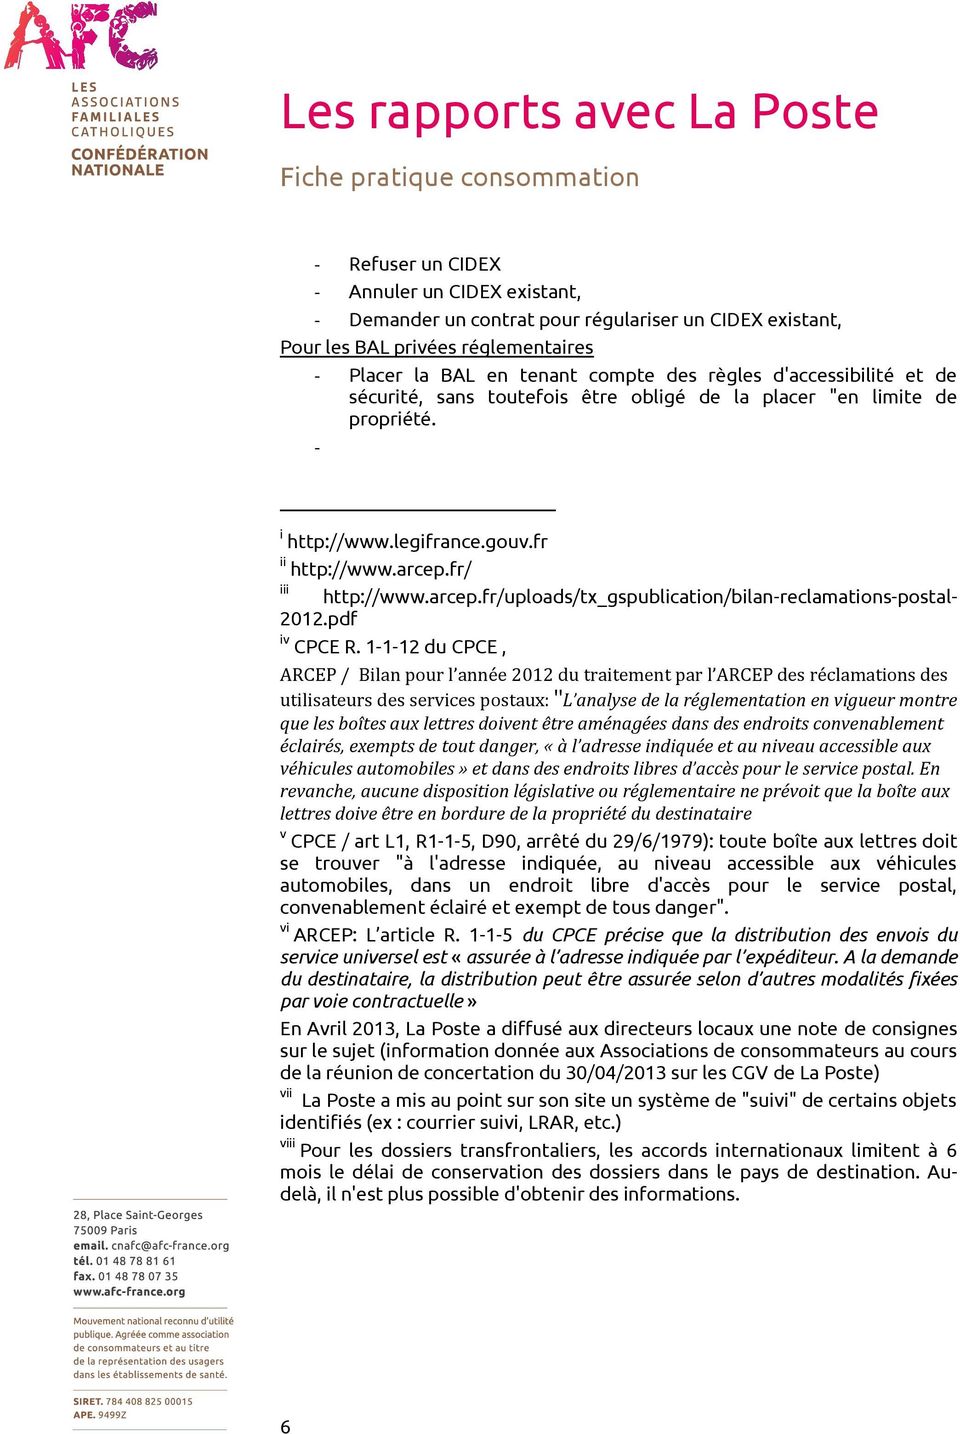 fr/ iii http://www.arcep.fr/uploads/tx_gspublication/bilan-reclamations-postal- 2012.pdf iv CPCE R.